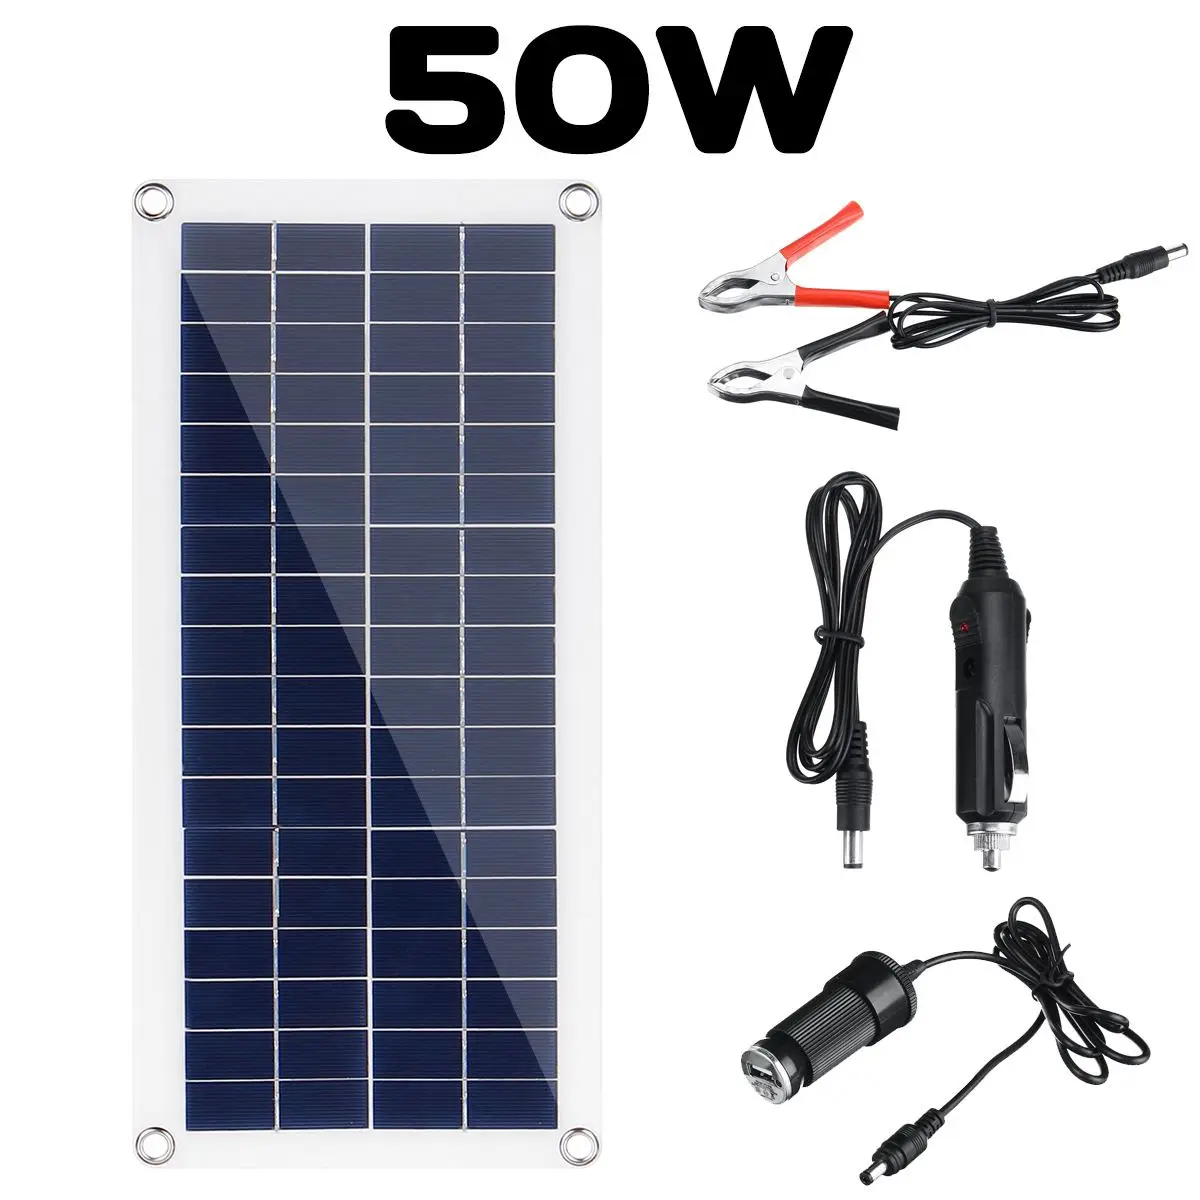 30 Вт/50 Вт 18 в солнечная панель, солнечная ячейка, модуль постоянного тока для автомобиля, яхты, светодиодный светильник, RV, батарея, лодка, уличное зарядное устройство для зеленой окружающей среды